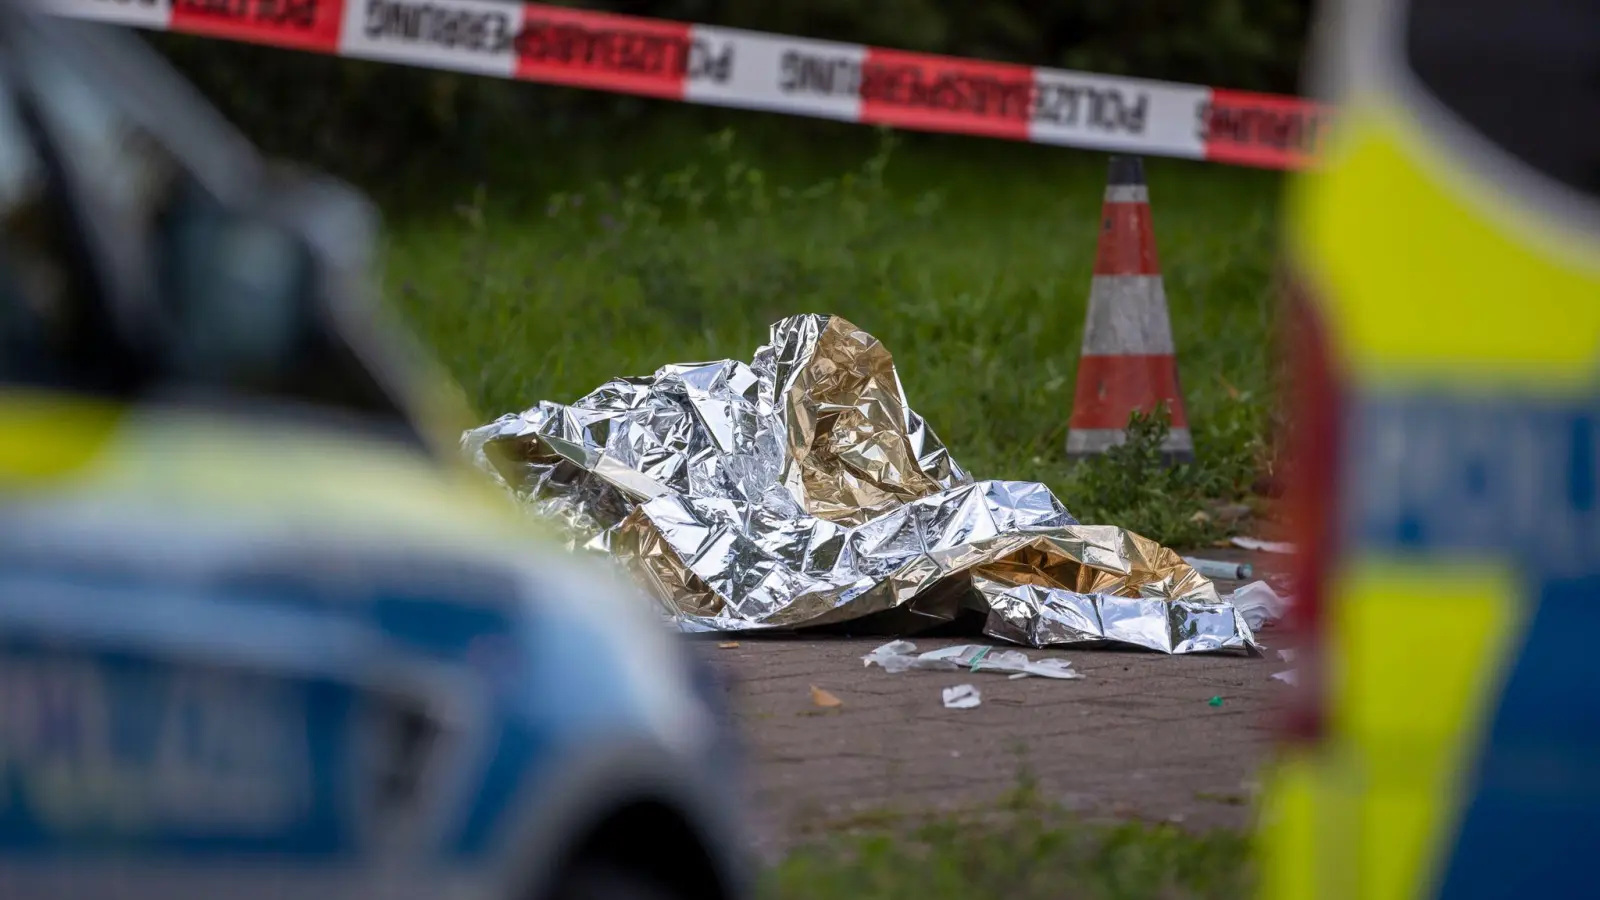 Wärmefolie liegt an dem Ort in Dormagen, an dem die Polizei einen den mutmaßlichen Täter mit Schussverletzung aufgefunden hatte. (Foto: Christoph Reichwein/dpa)